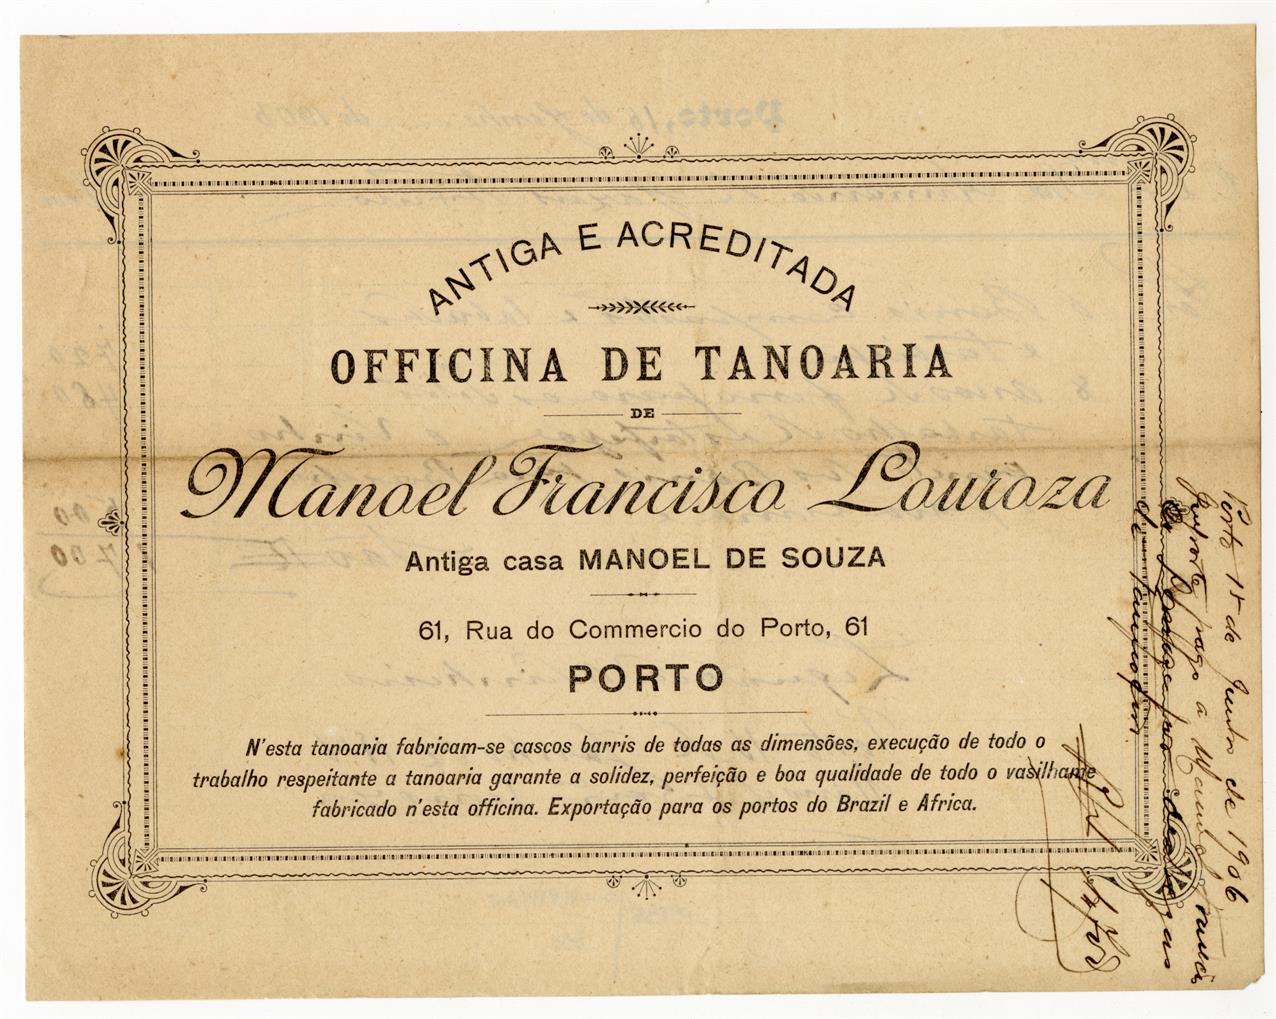 [Recibo da antiga e acreditada oficina de tanoaria de Manuel Francisco Lourosa, antiga casa Manuel de Sousa]